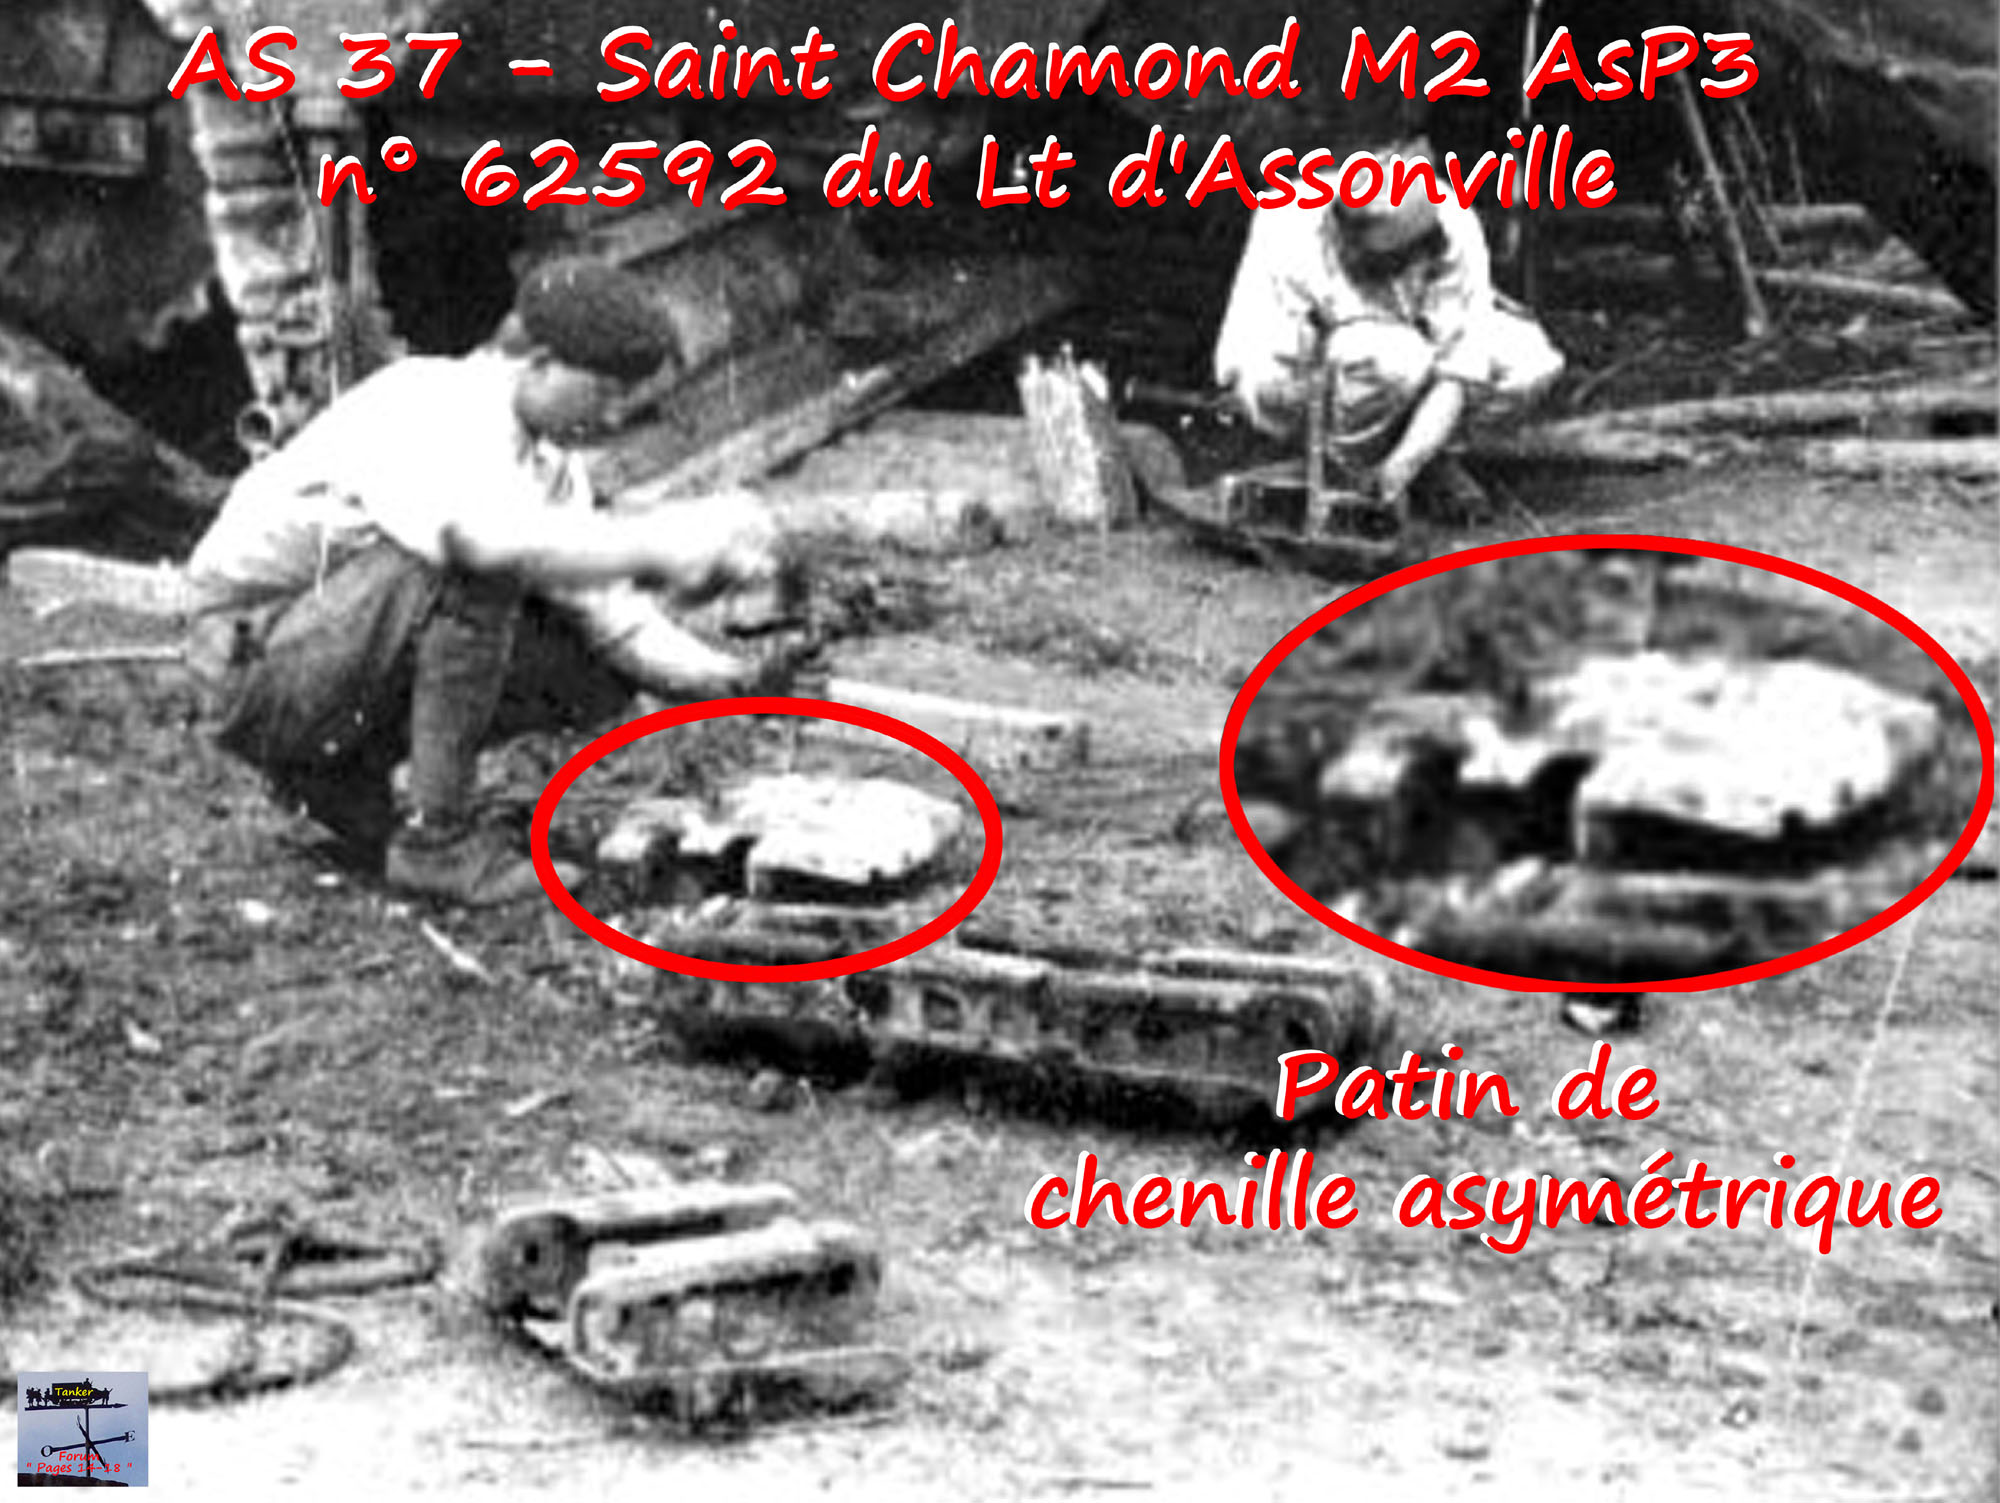 29 - Patin de chenille asymétrique du St Chamond  M2 n° 62592.jpg